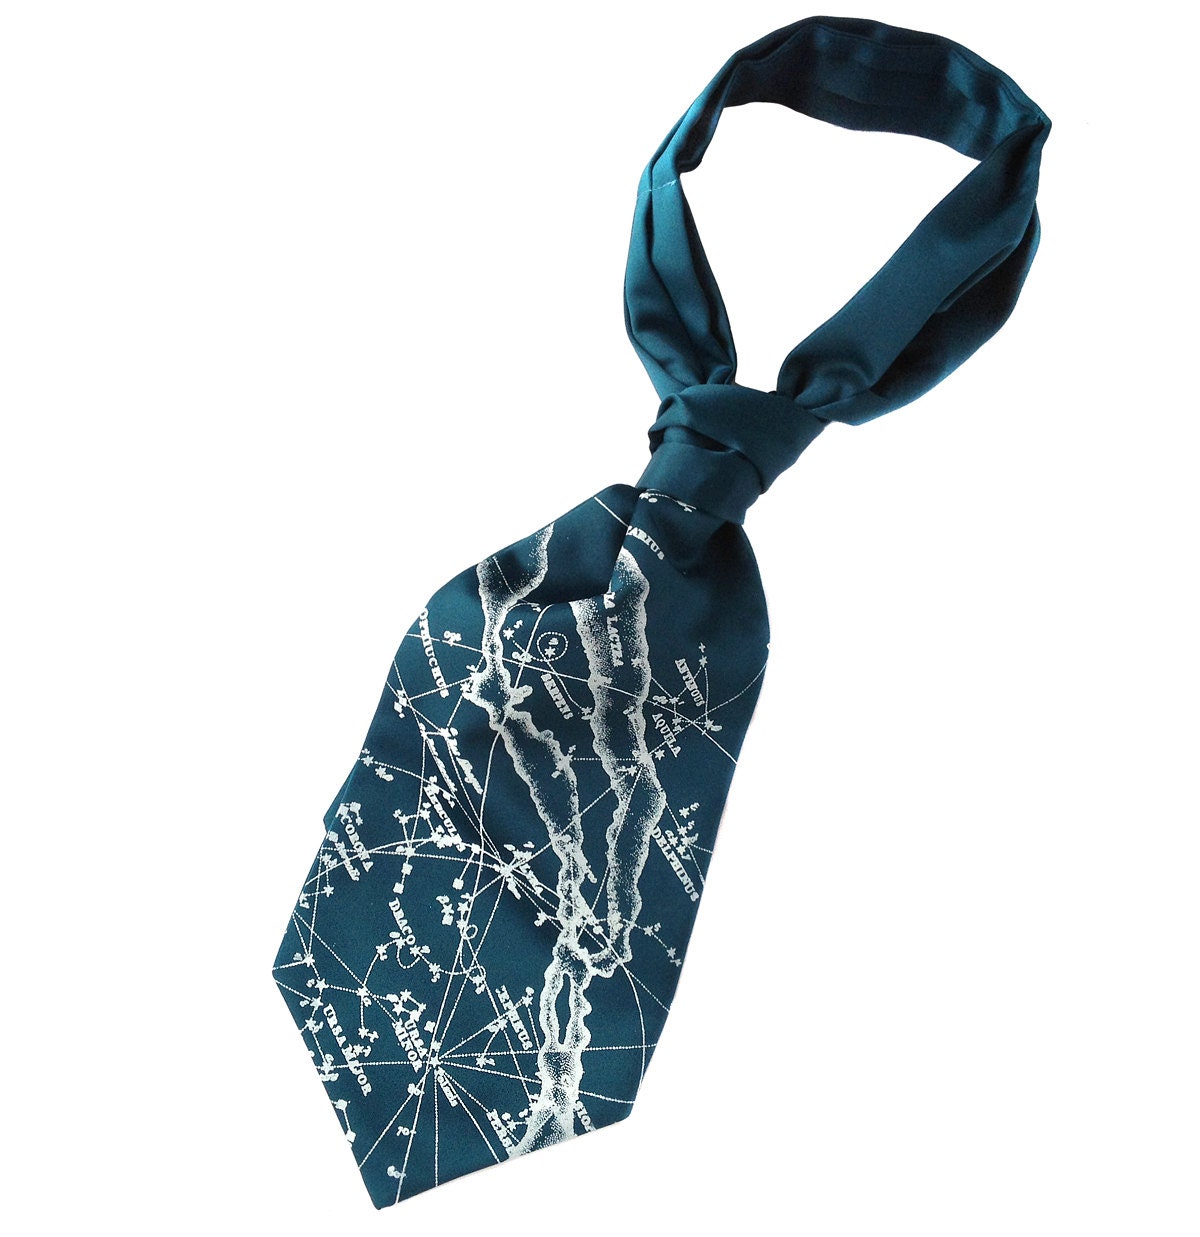 Cravat Self Tie Ascot All Colors Microfiber